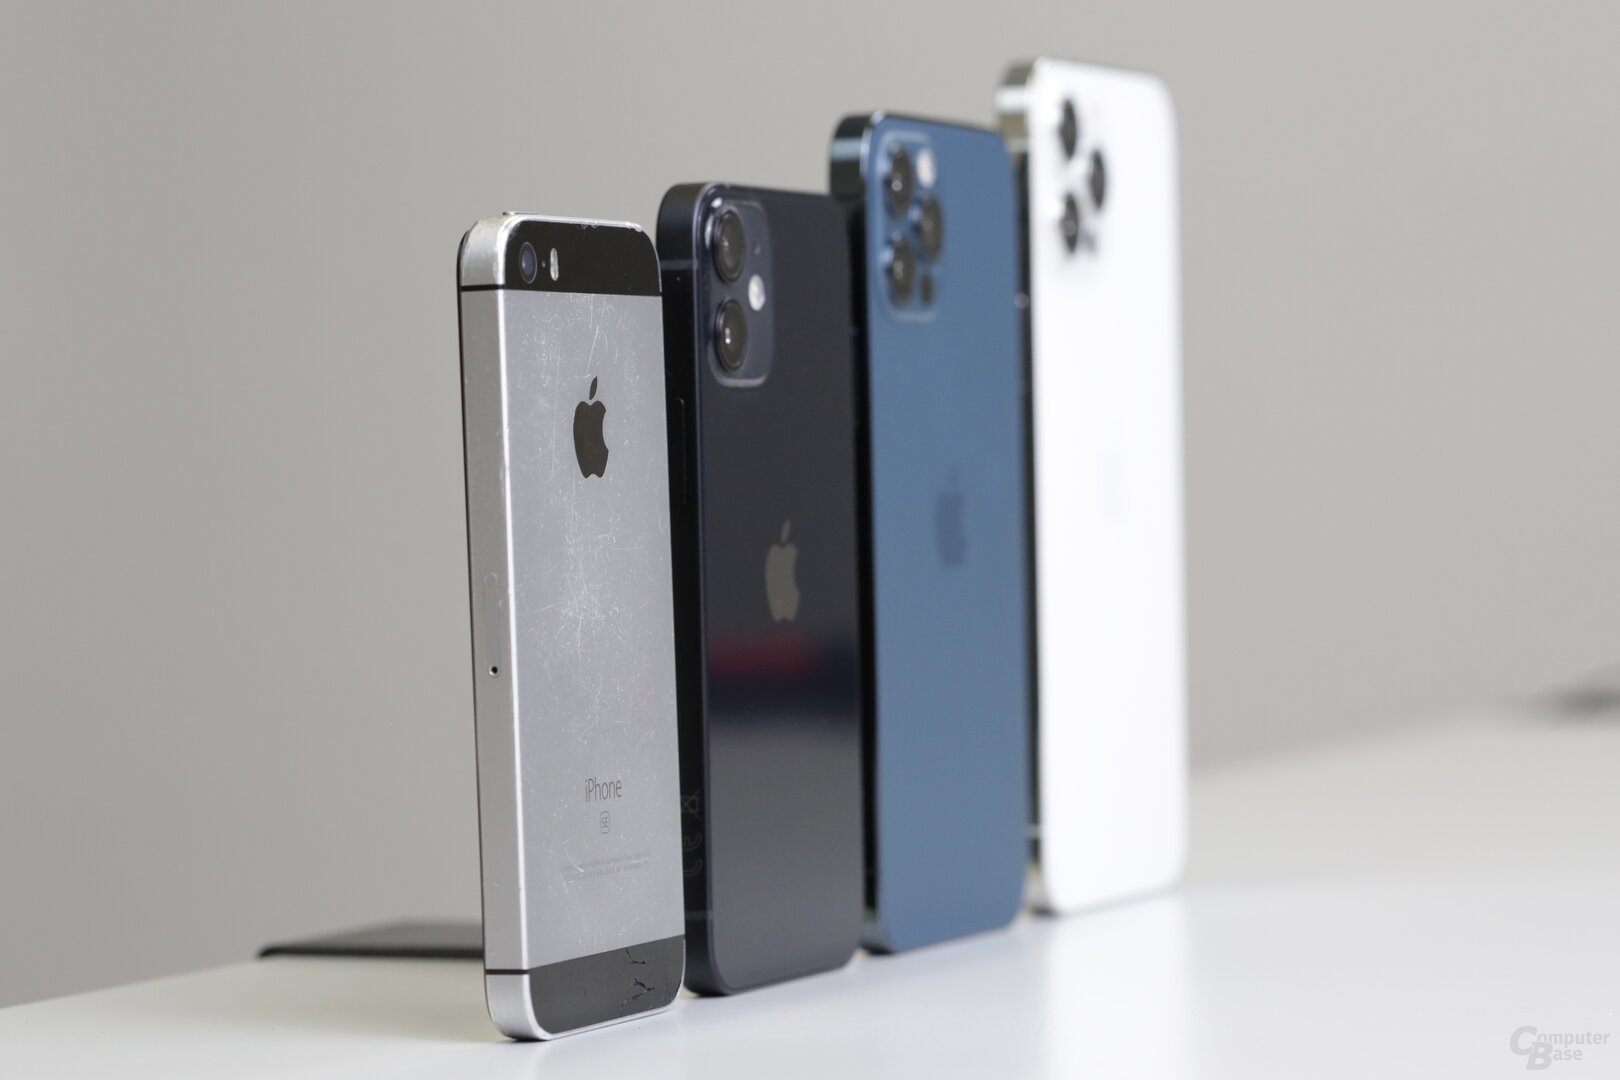 Größen von iPhone SE bis iPhone 12 Pro Max